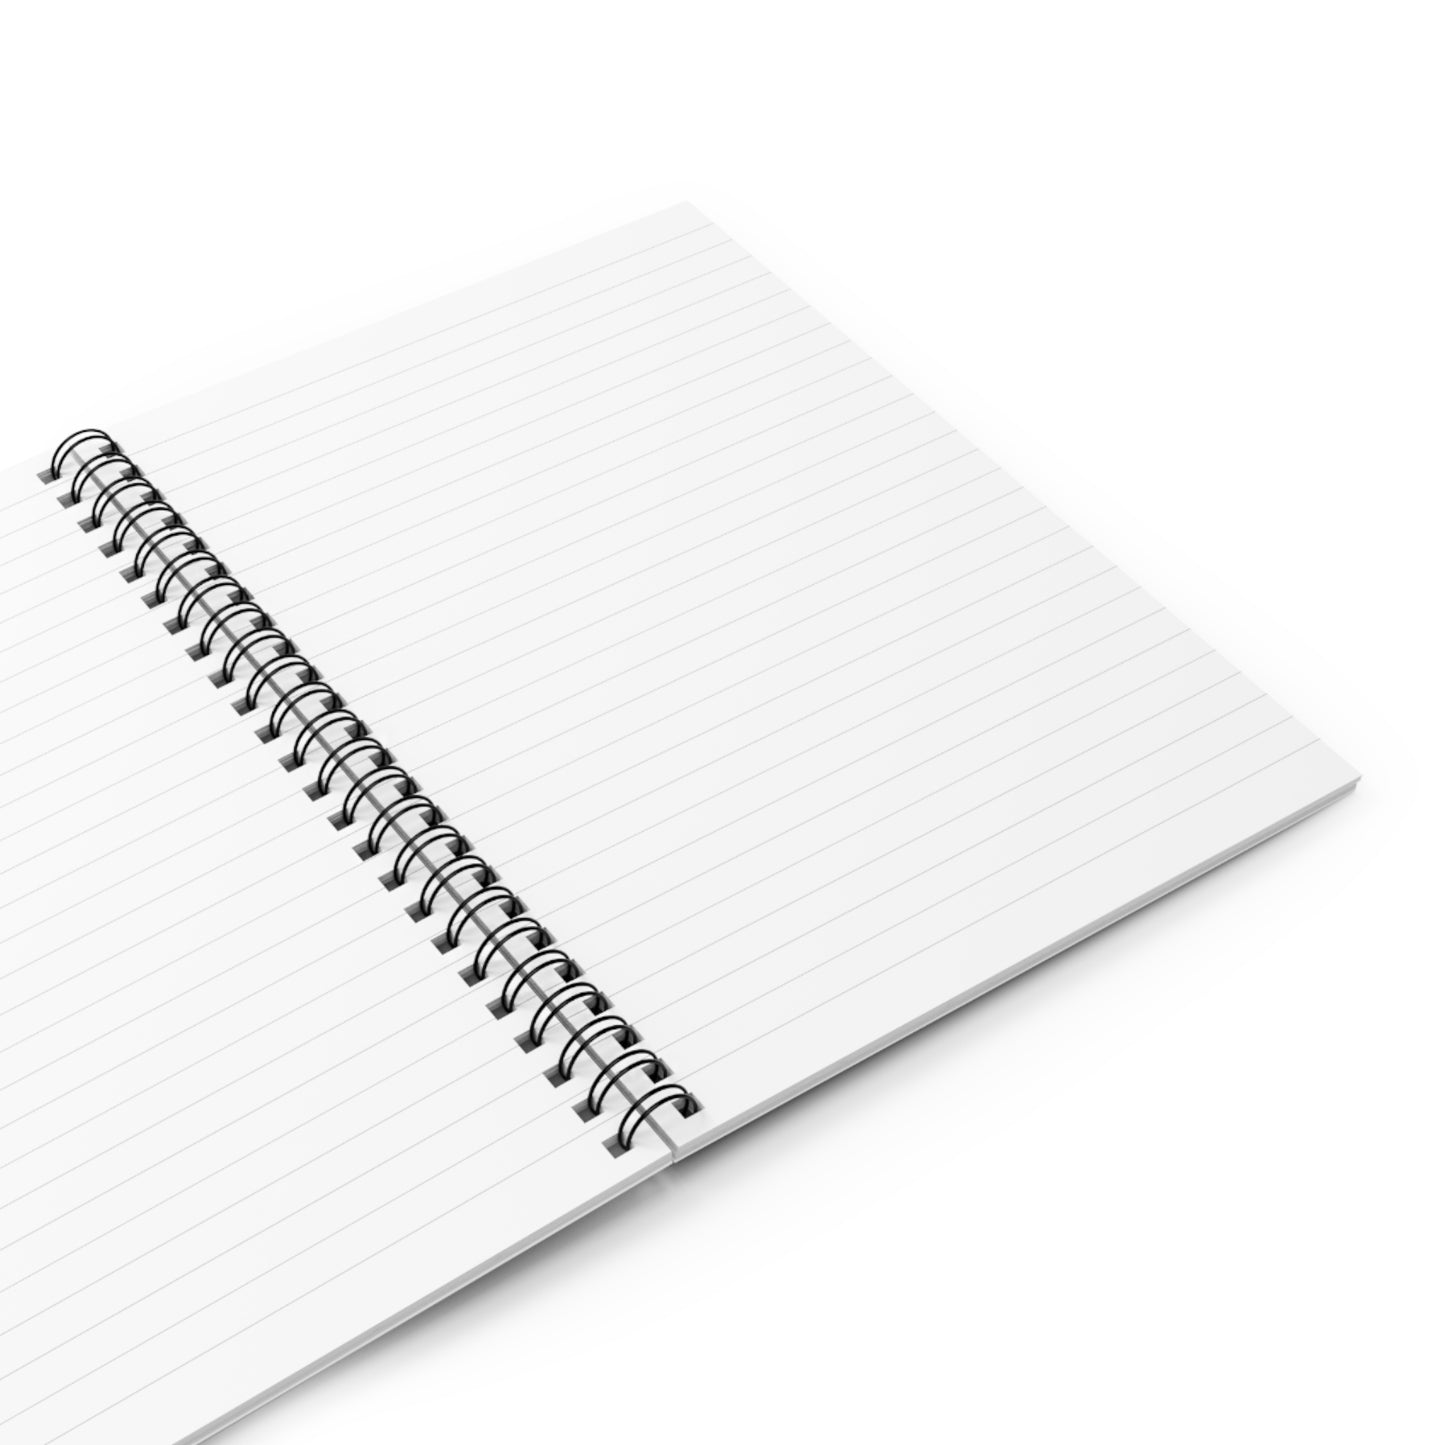 Choose Joy Spiral Notebook - Ruled Line